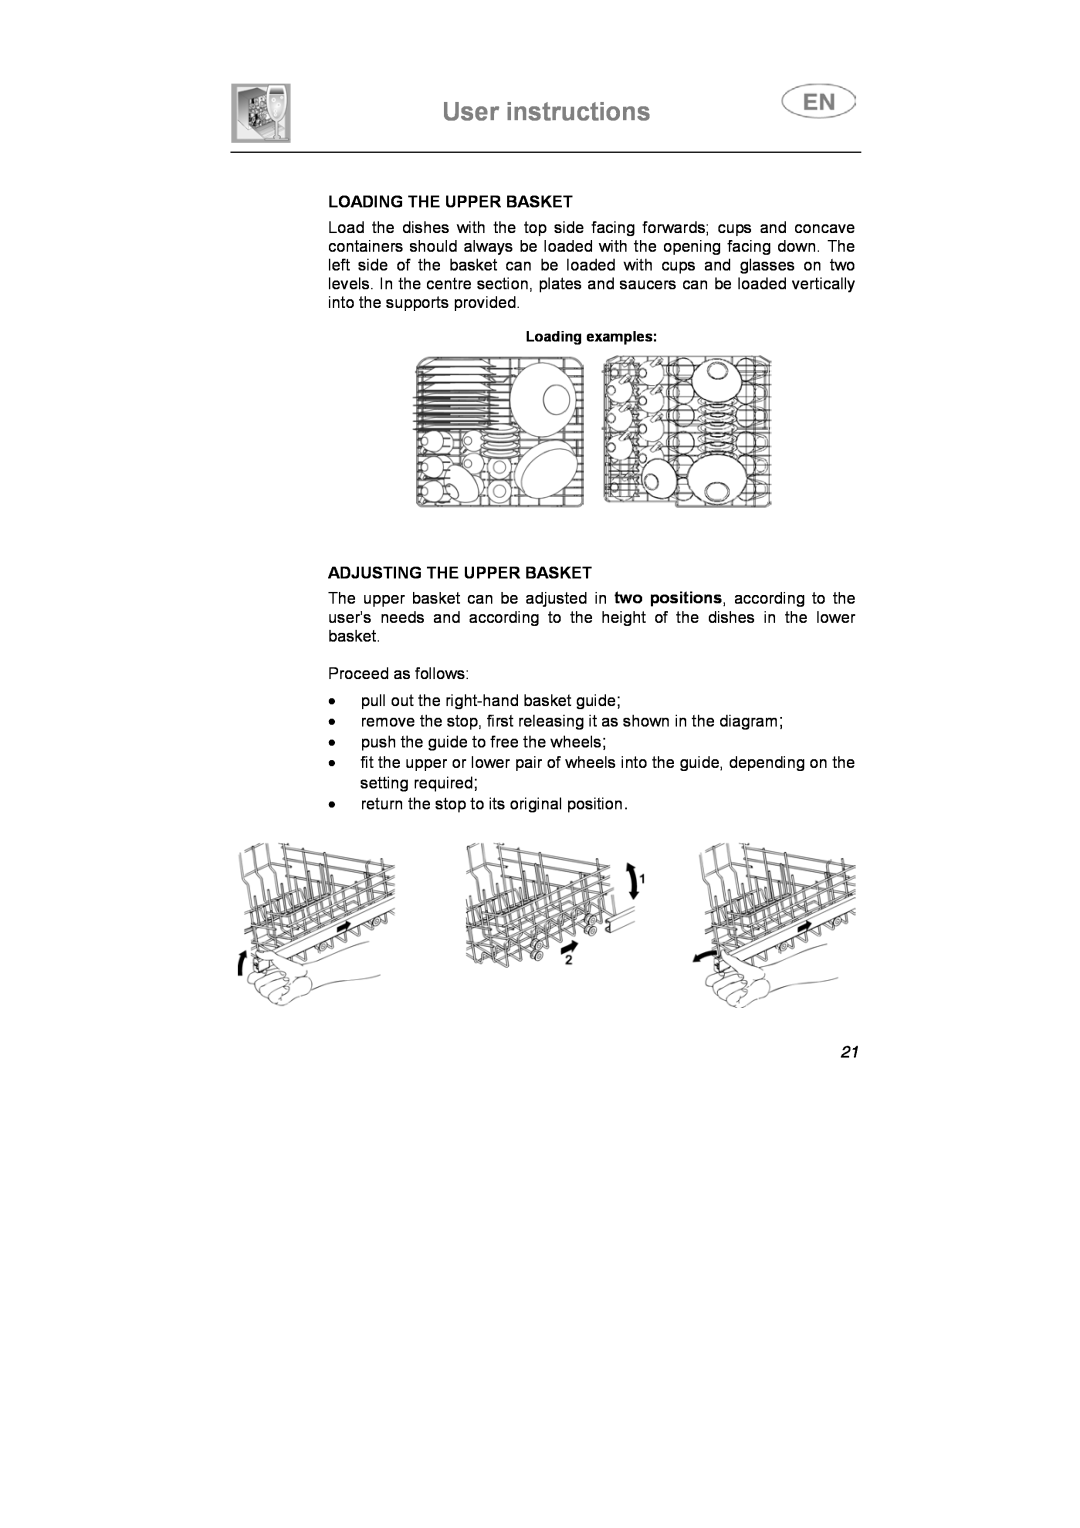 Smeg PL60XME instruction manual User instructions, Loading The Upper Basket, Adjusting The Upper Basket 